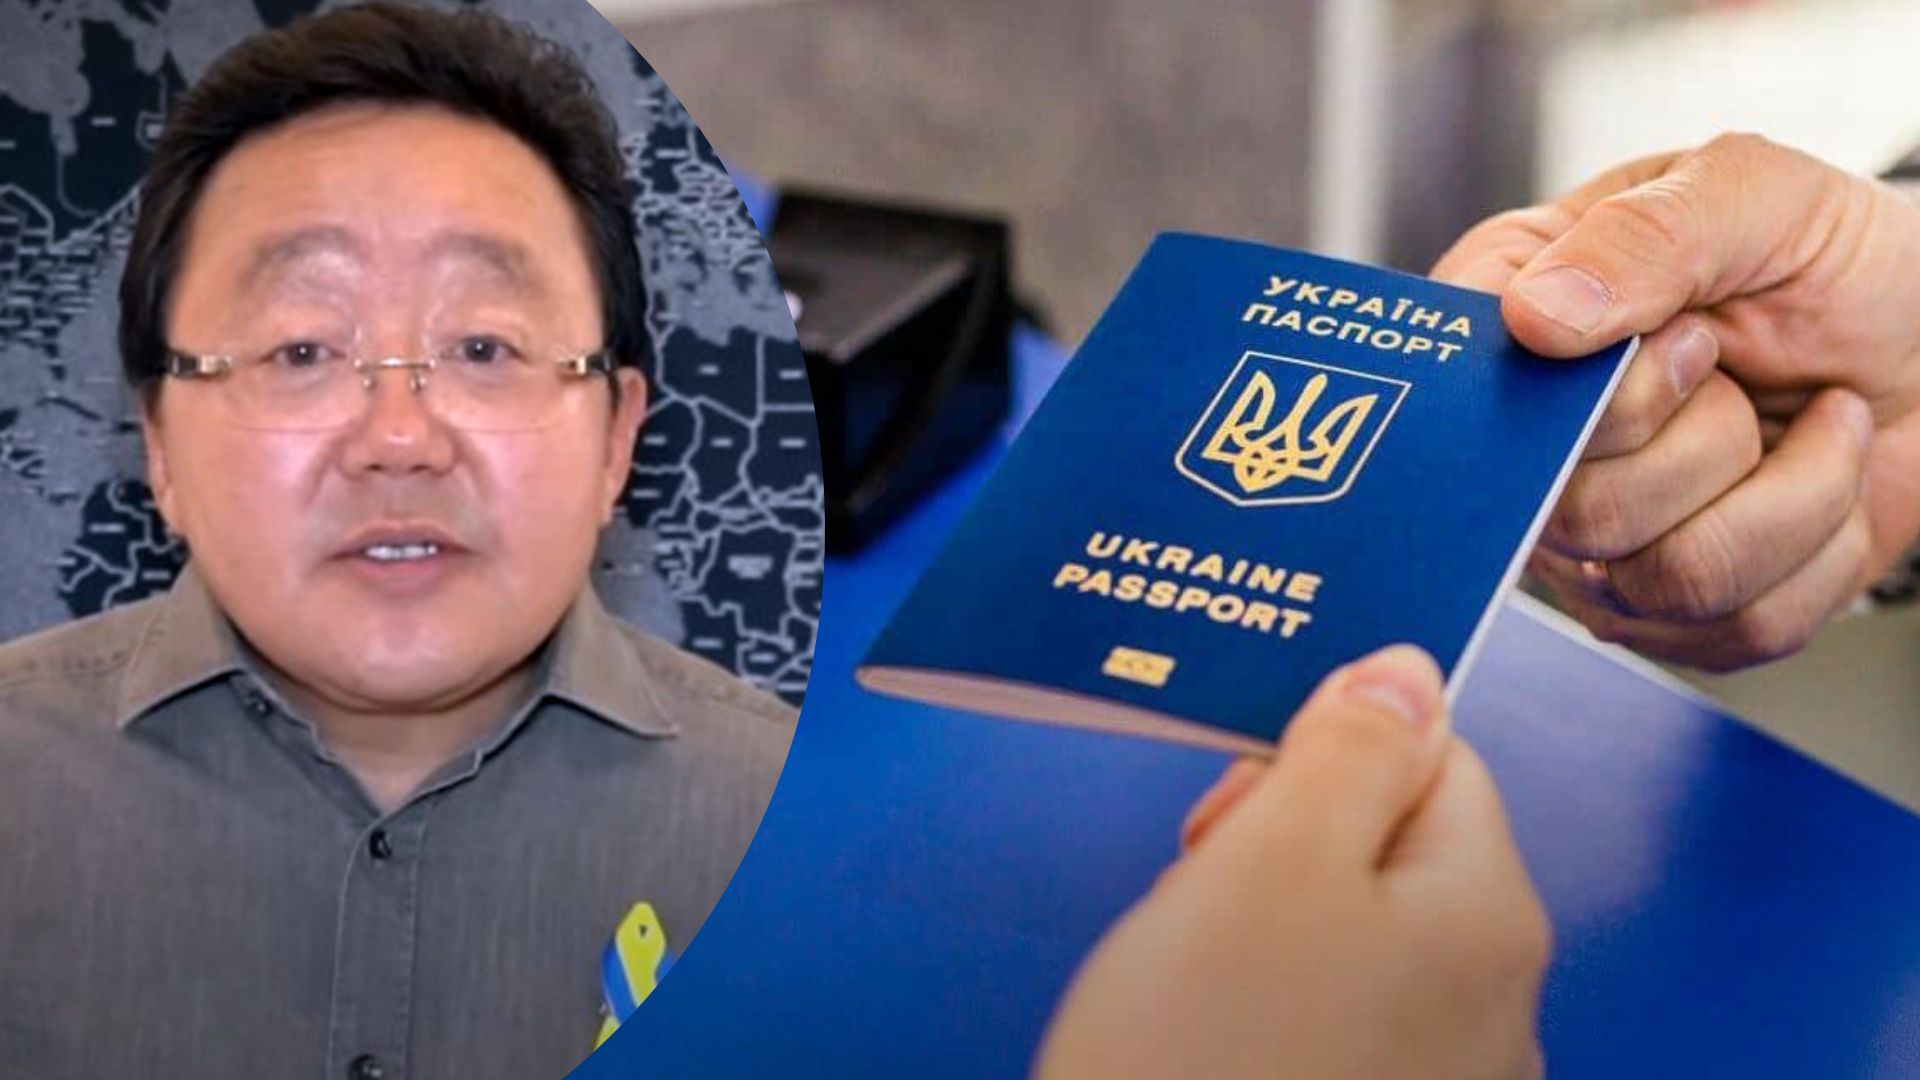 Элбегдорж считает украинский паспорт мощным сейчас